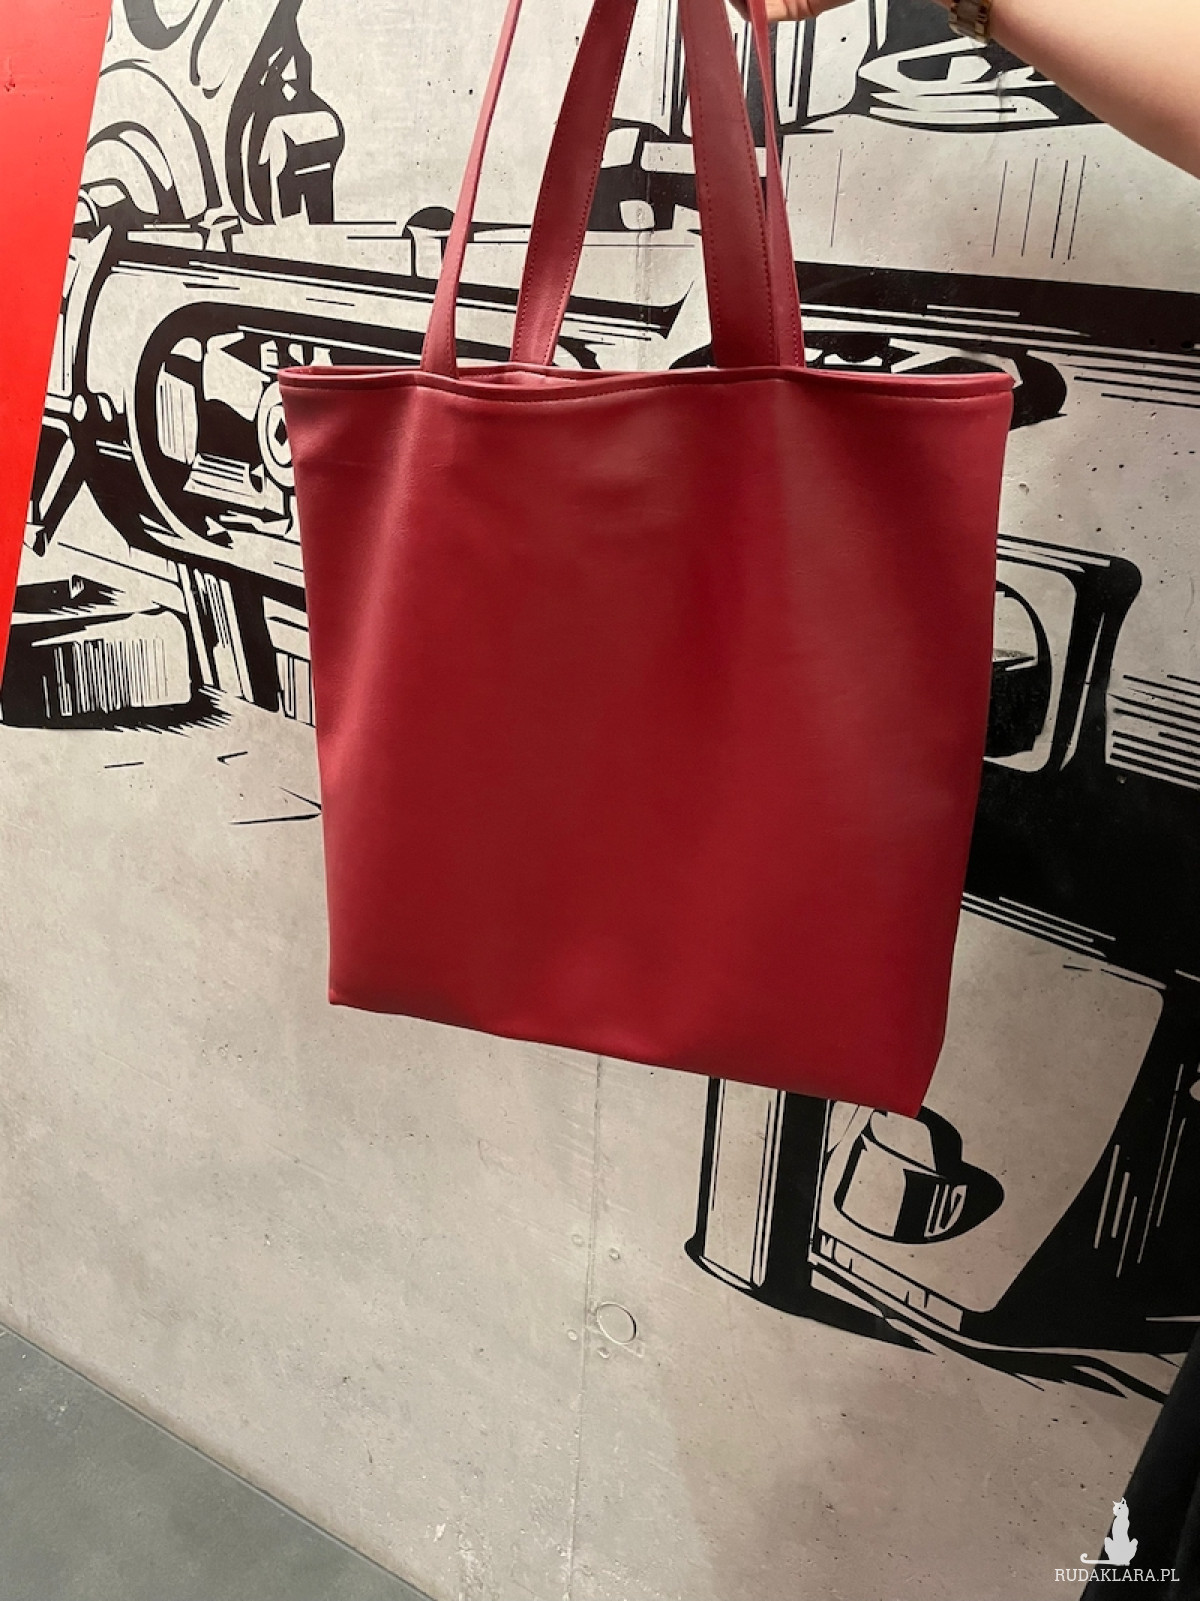 Red Shopper Bag